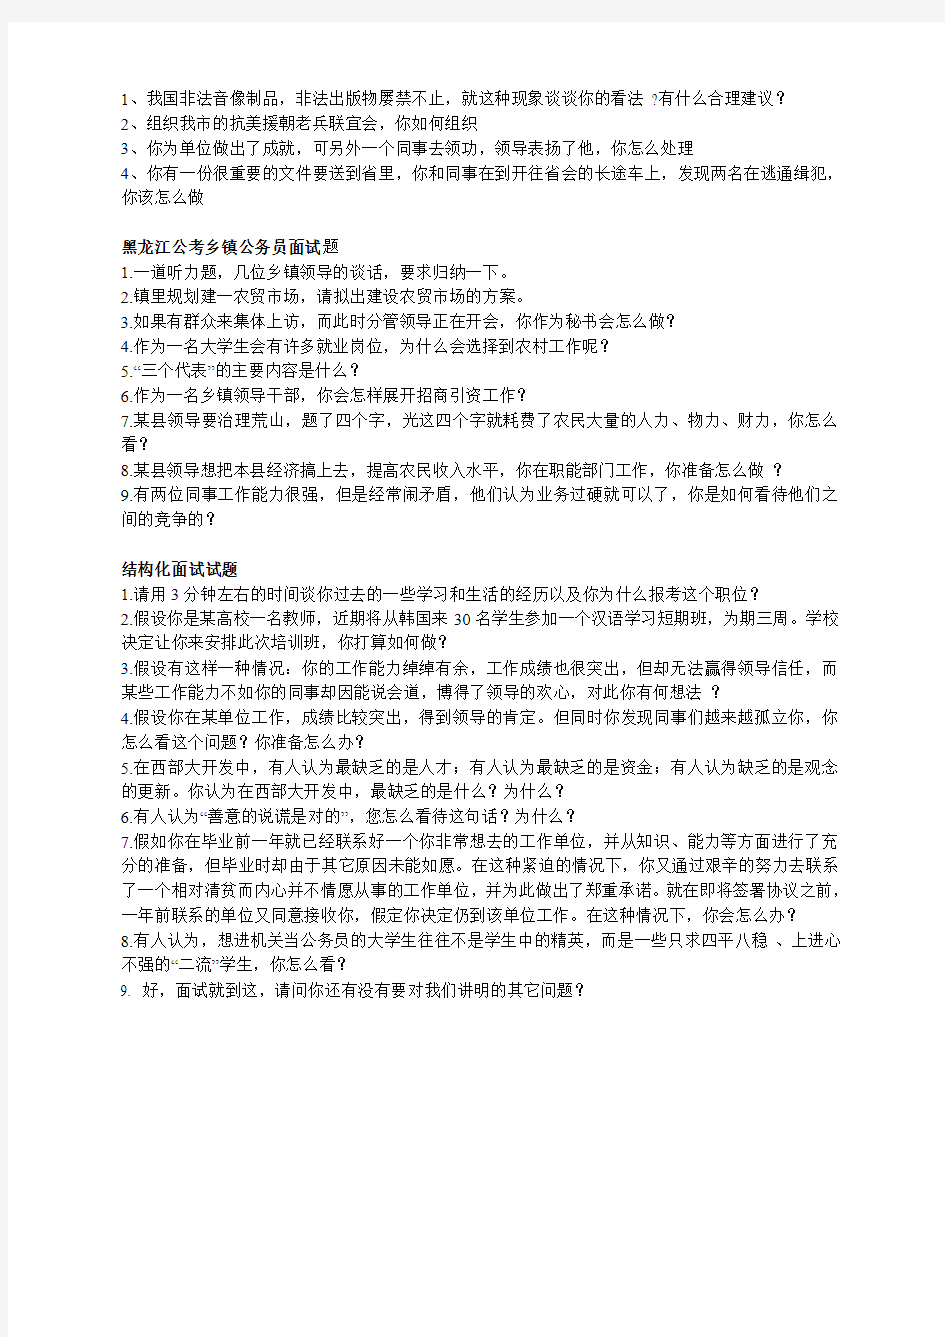 黑龙江省公务员考试面试历年真题汇总